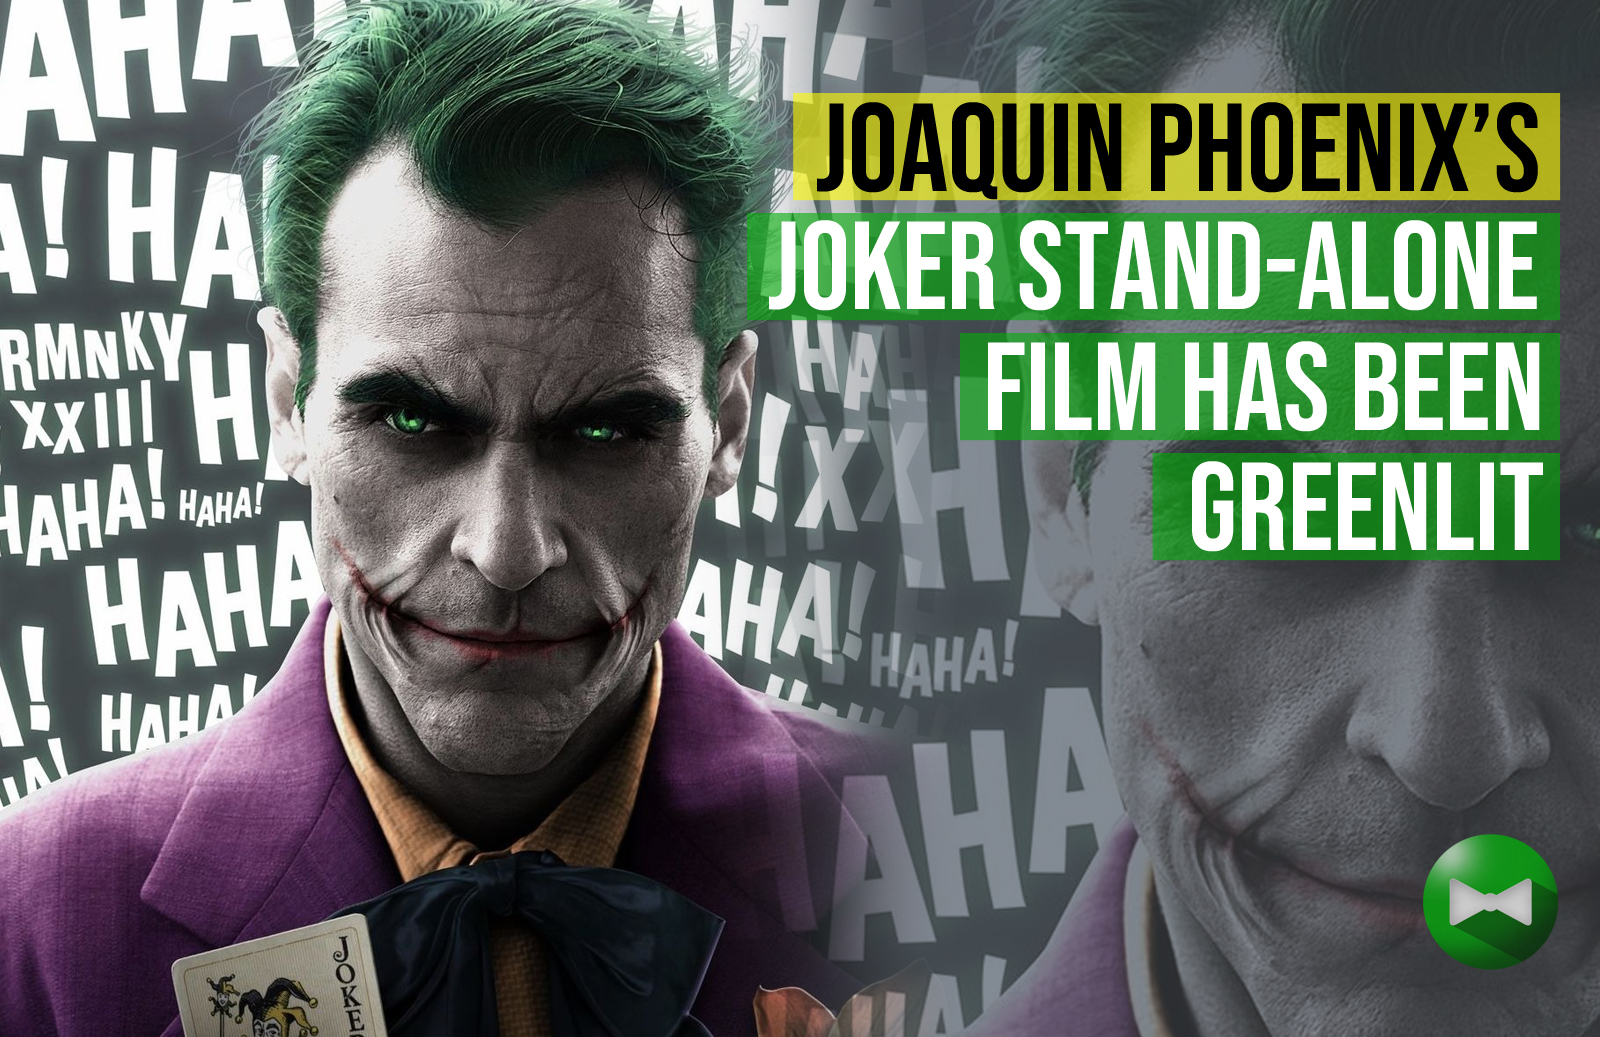 Joaquin Phoenix's Joker stand-alone film has been greenlit - The Geekery1600 x 1037